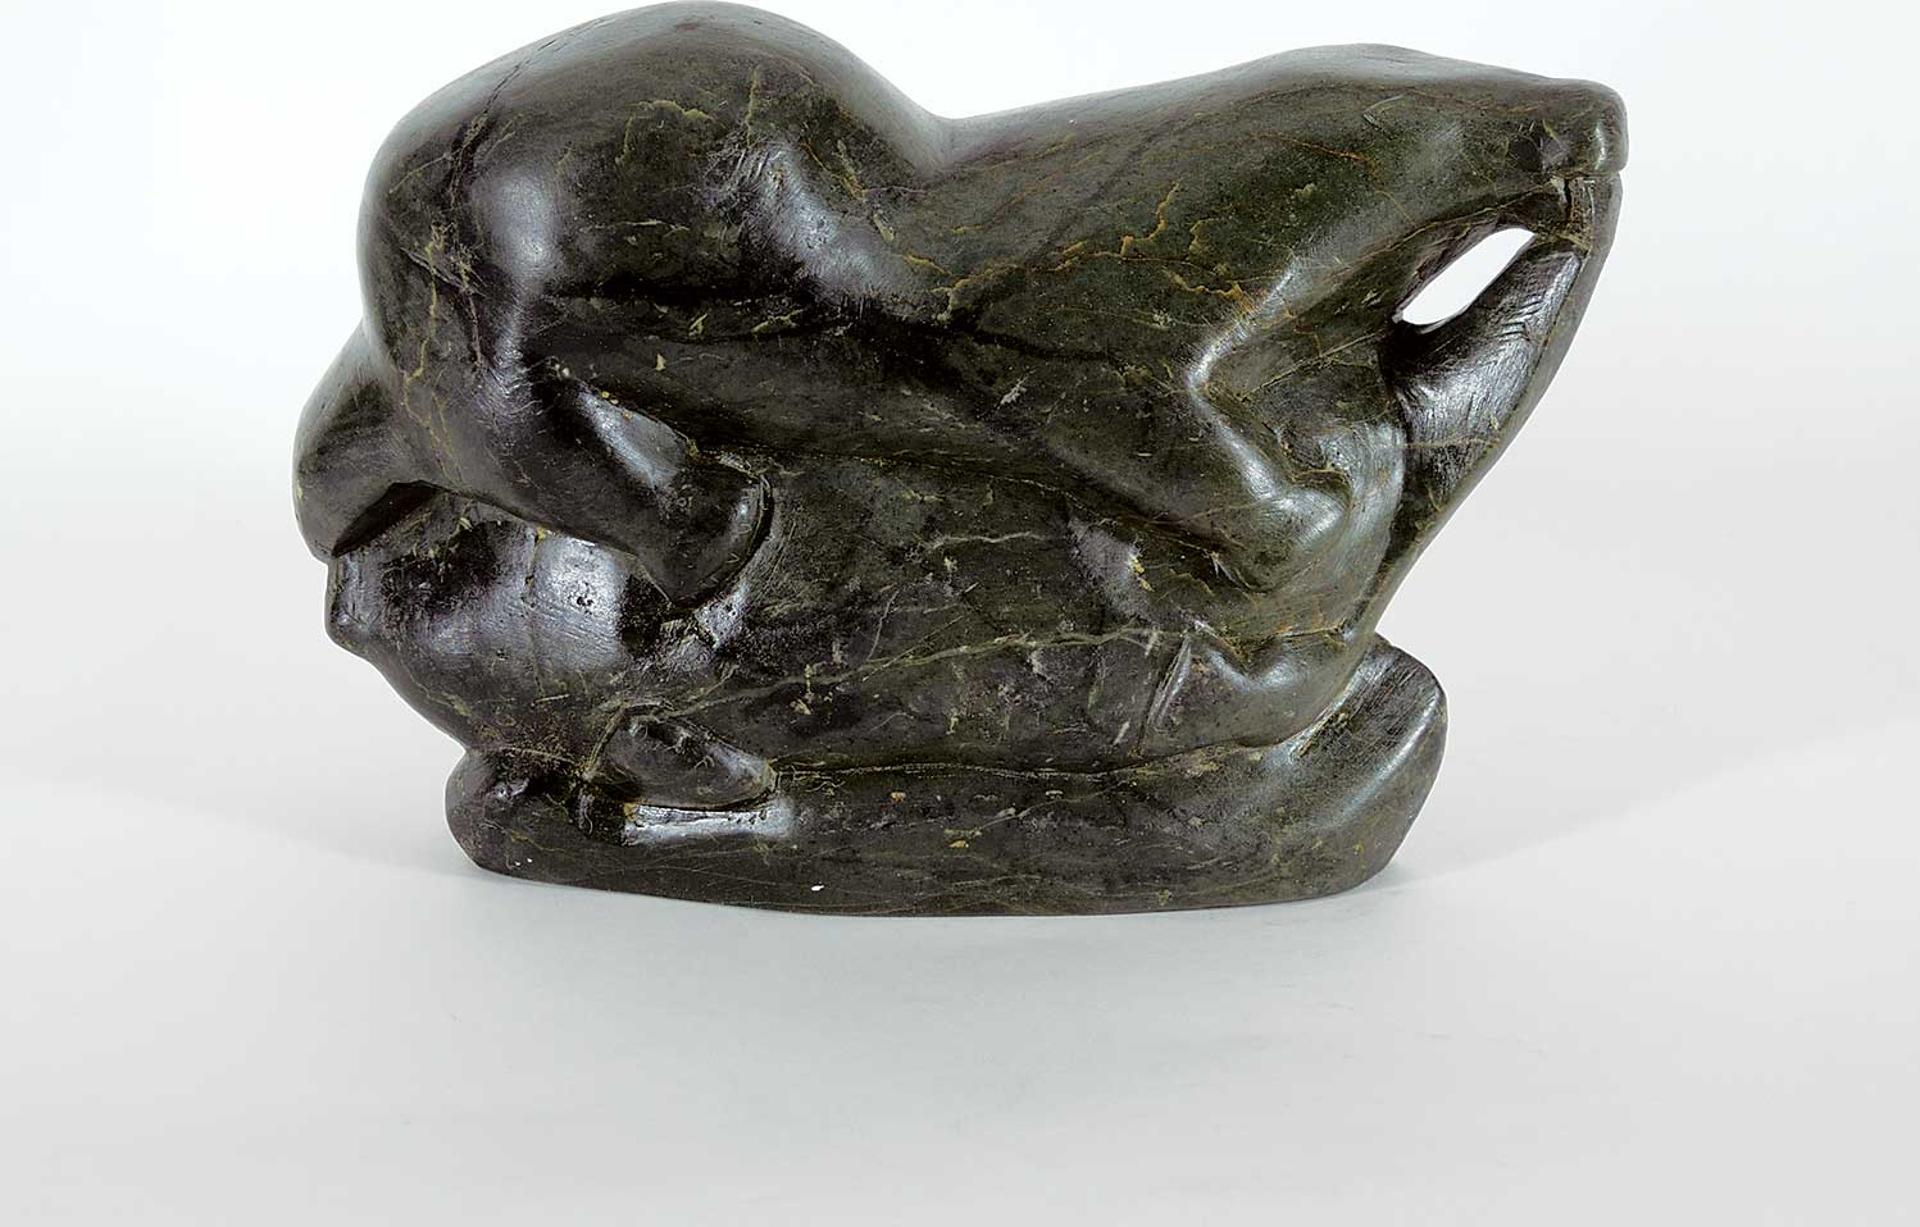 Lukasi Kanarjua Qinuajua (1937) - Untitled - Otter and Seal